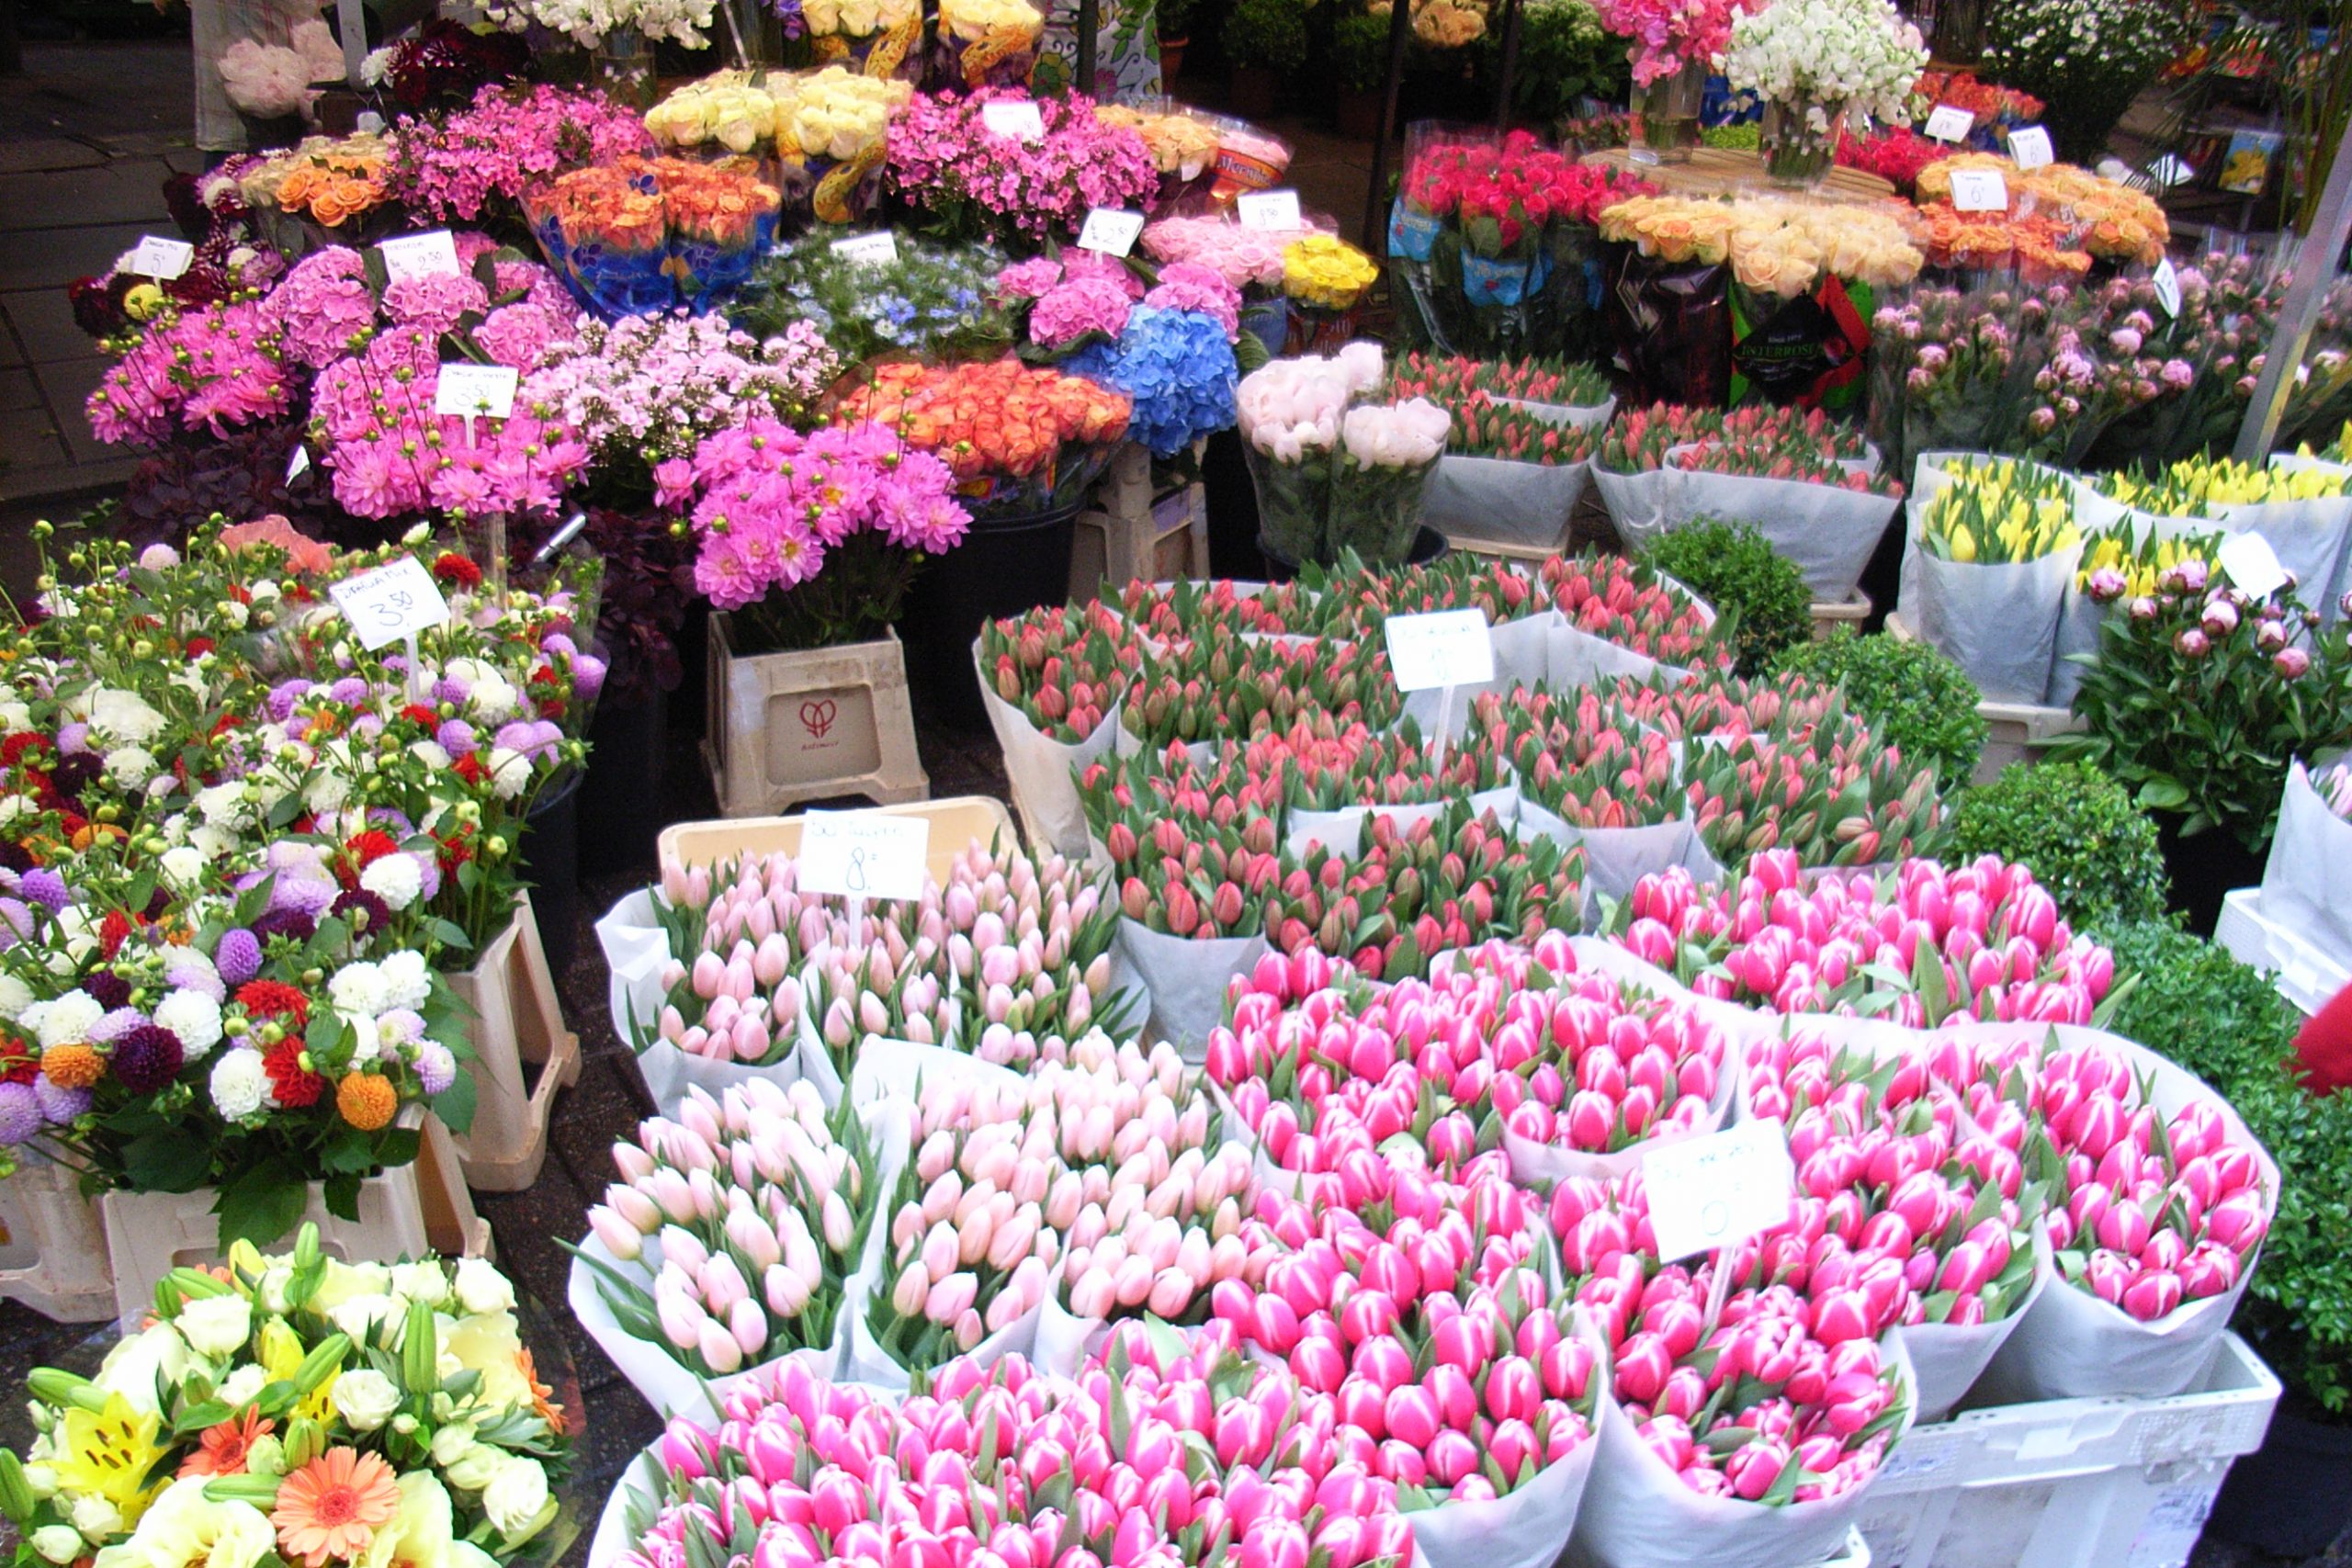 kvetinovy trh